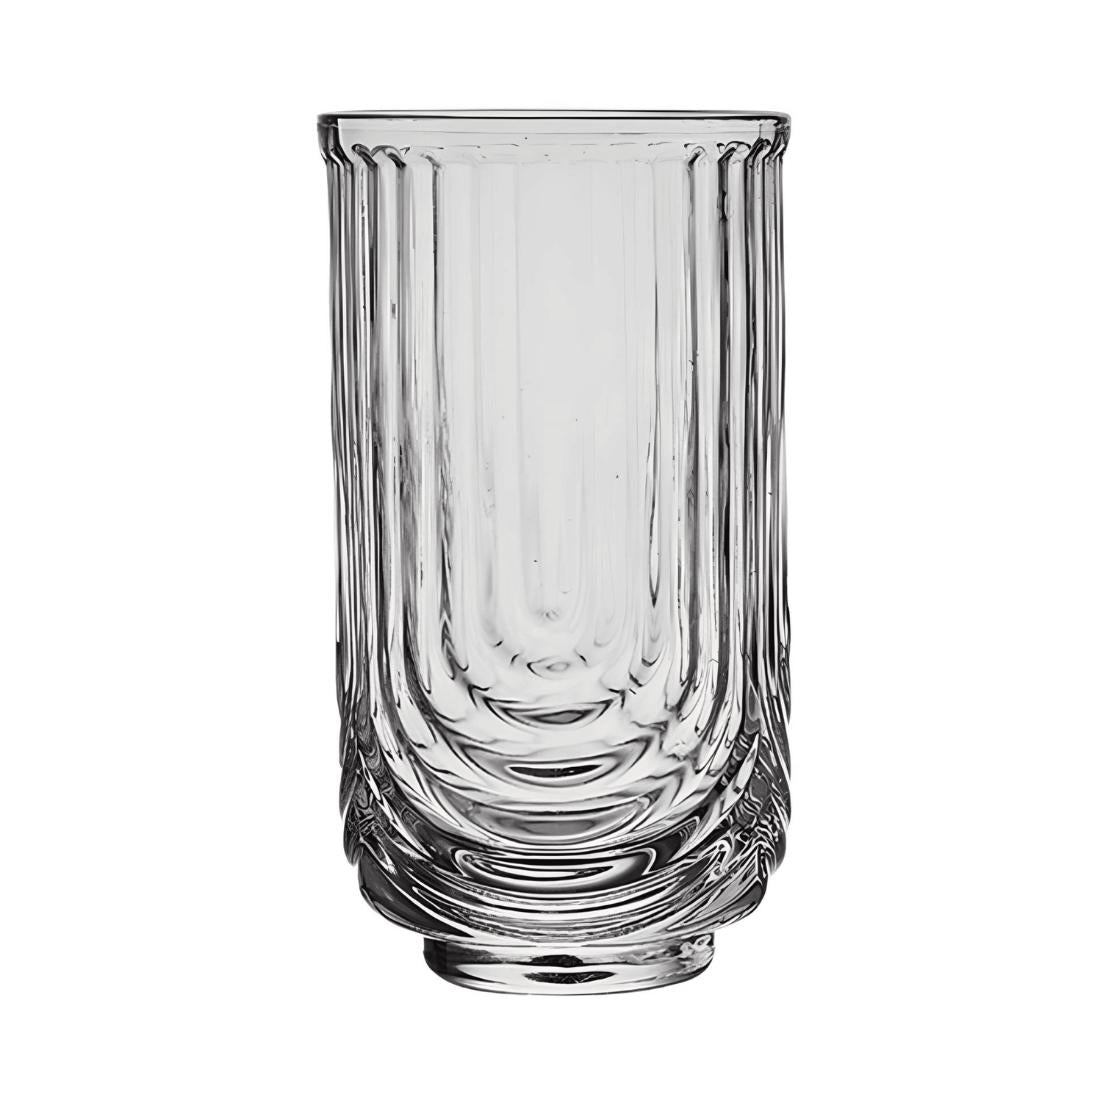 Tall U shape line drinking glass